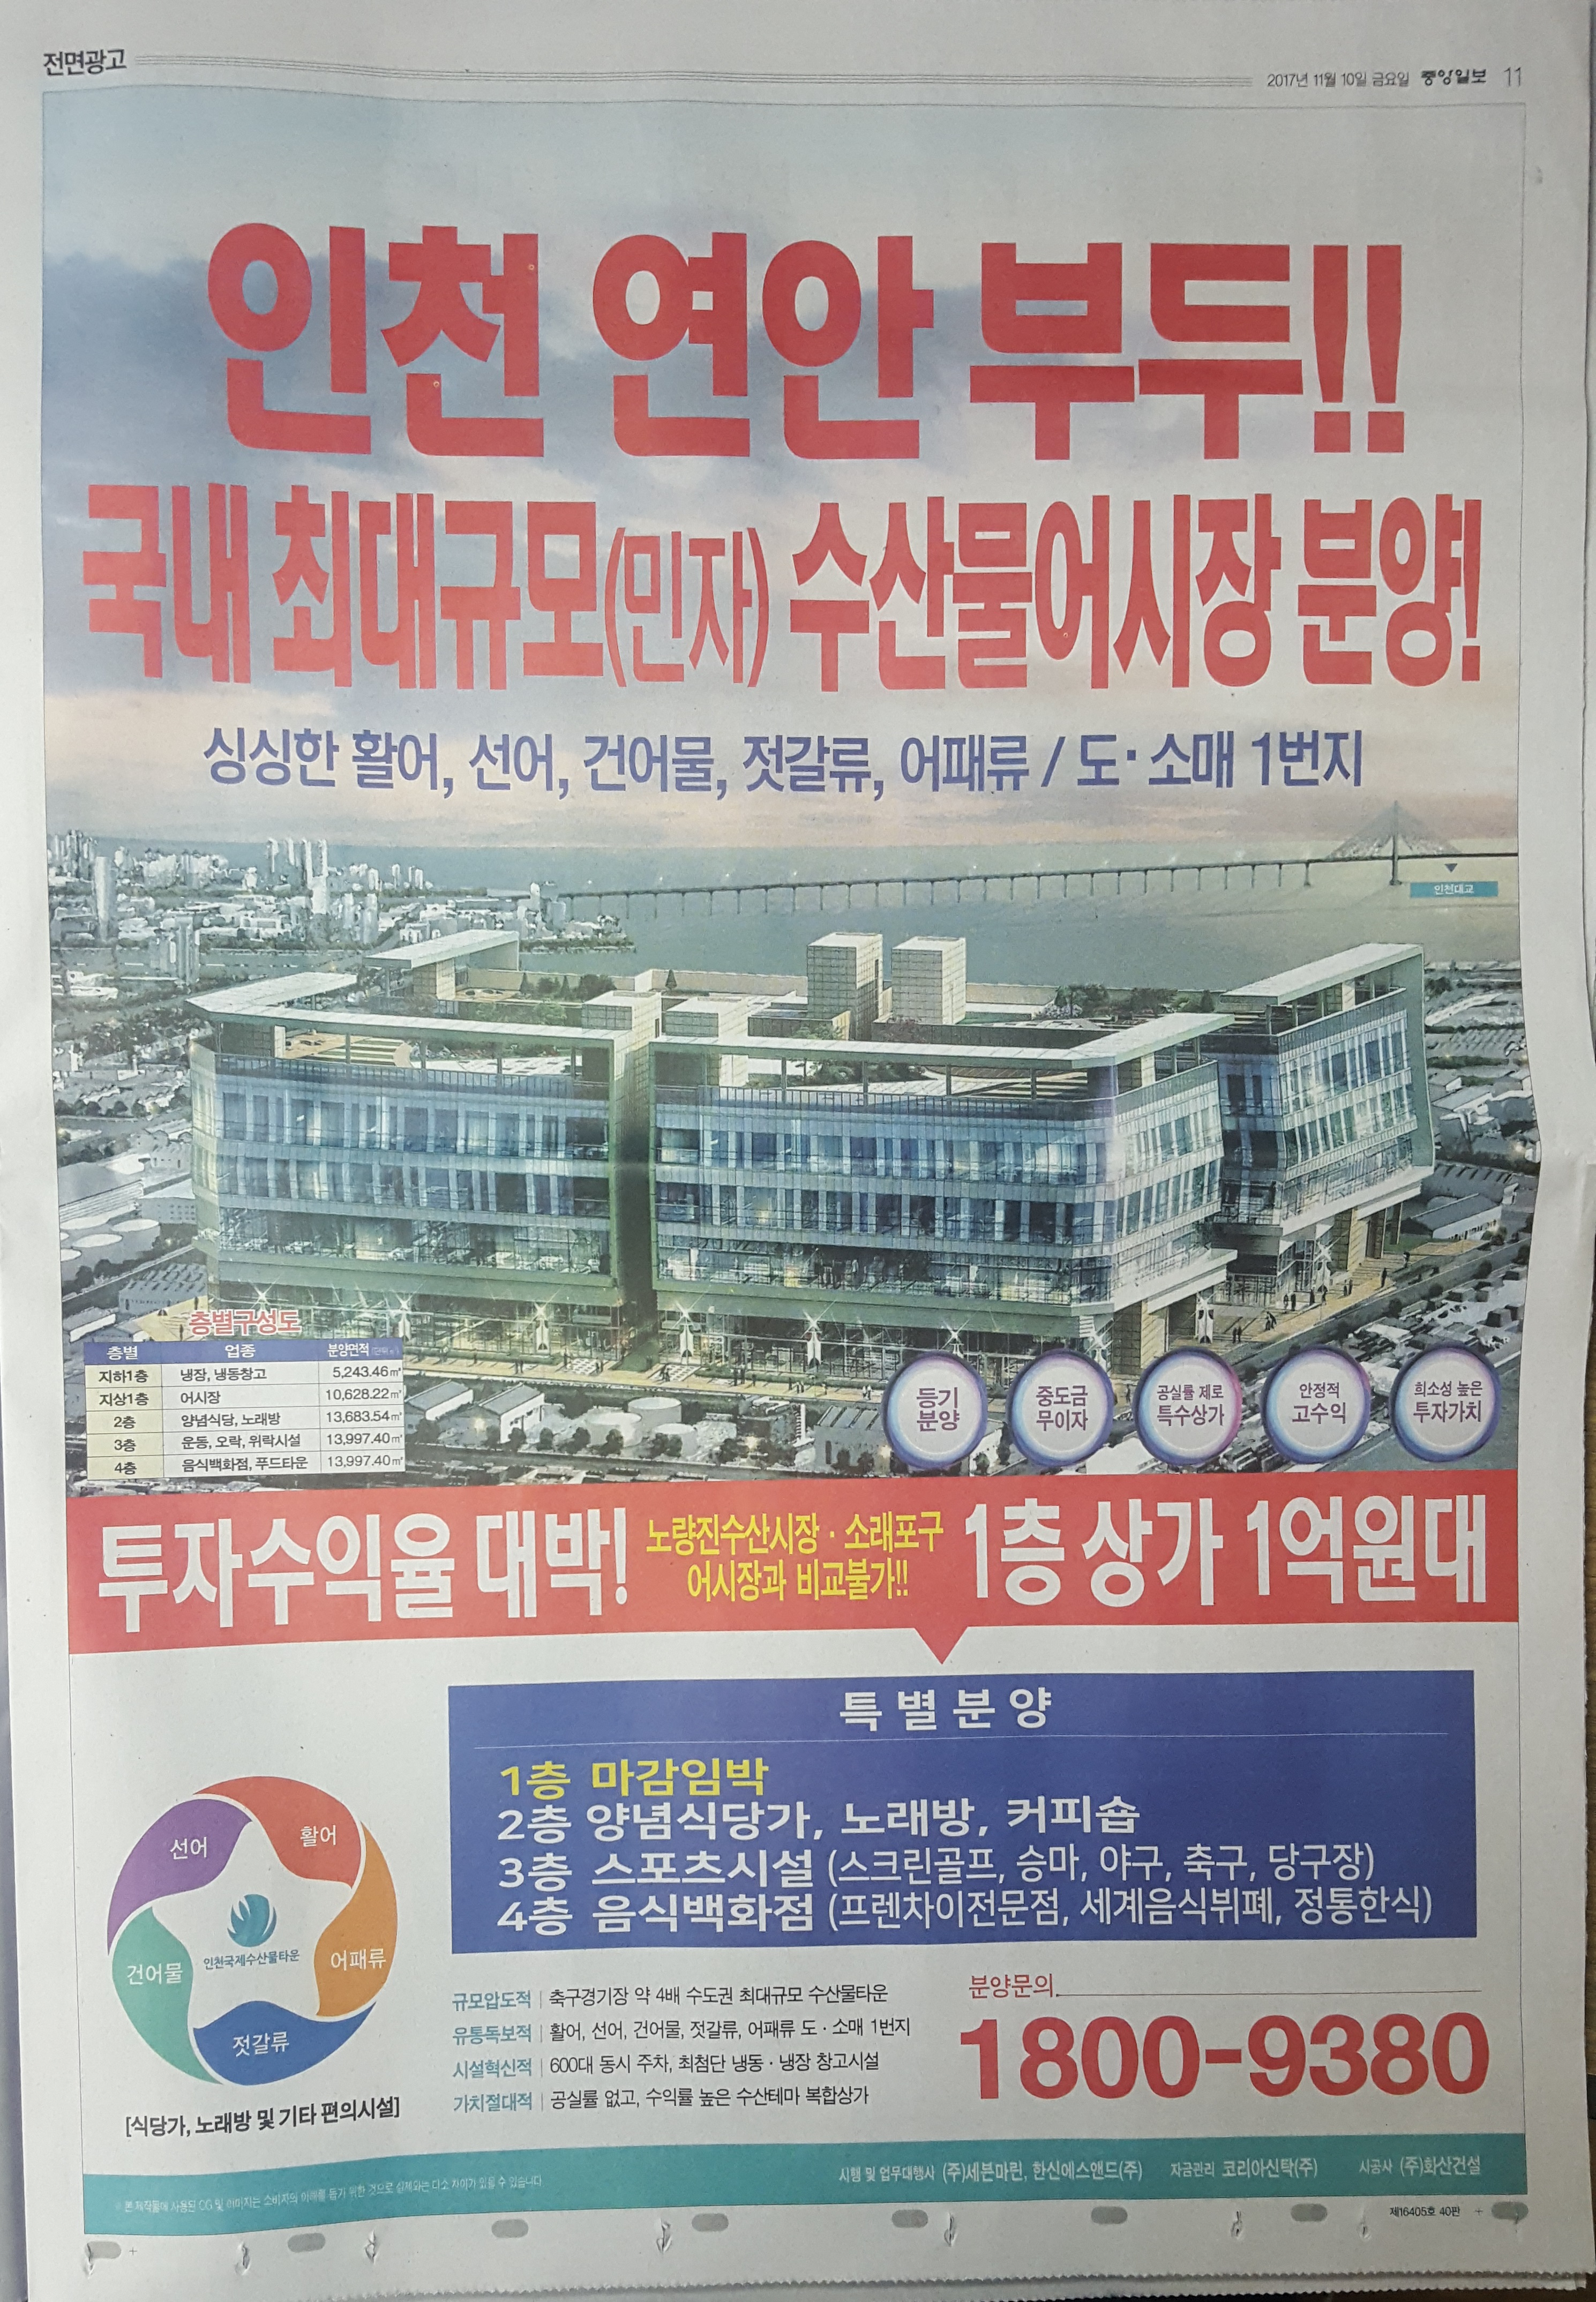 11월 10일 중앙일보 11 인천 연안 부두 수산물어시장 - 전면.jpg